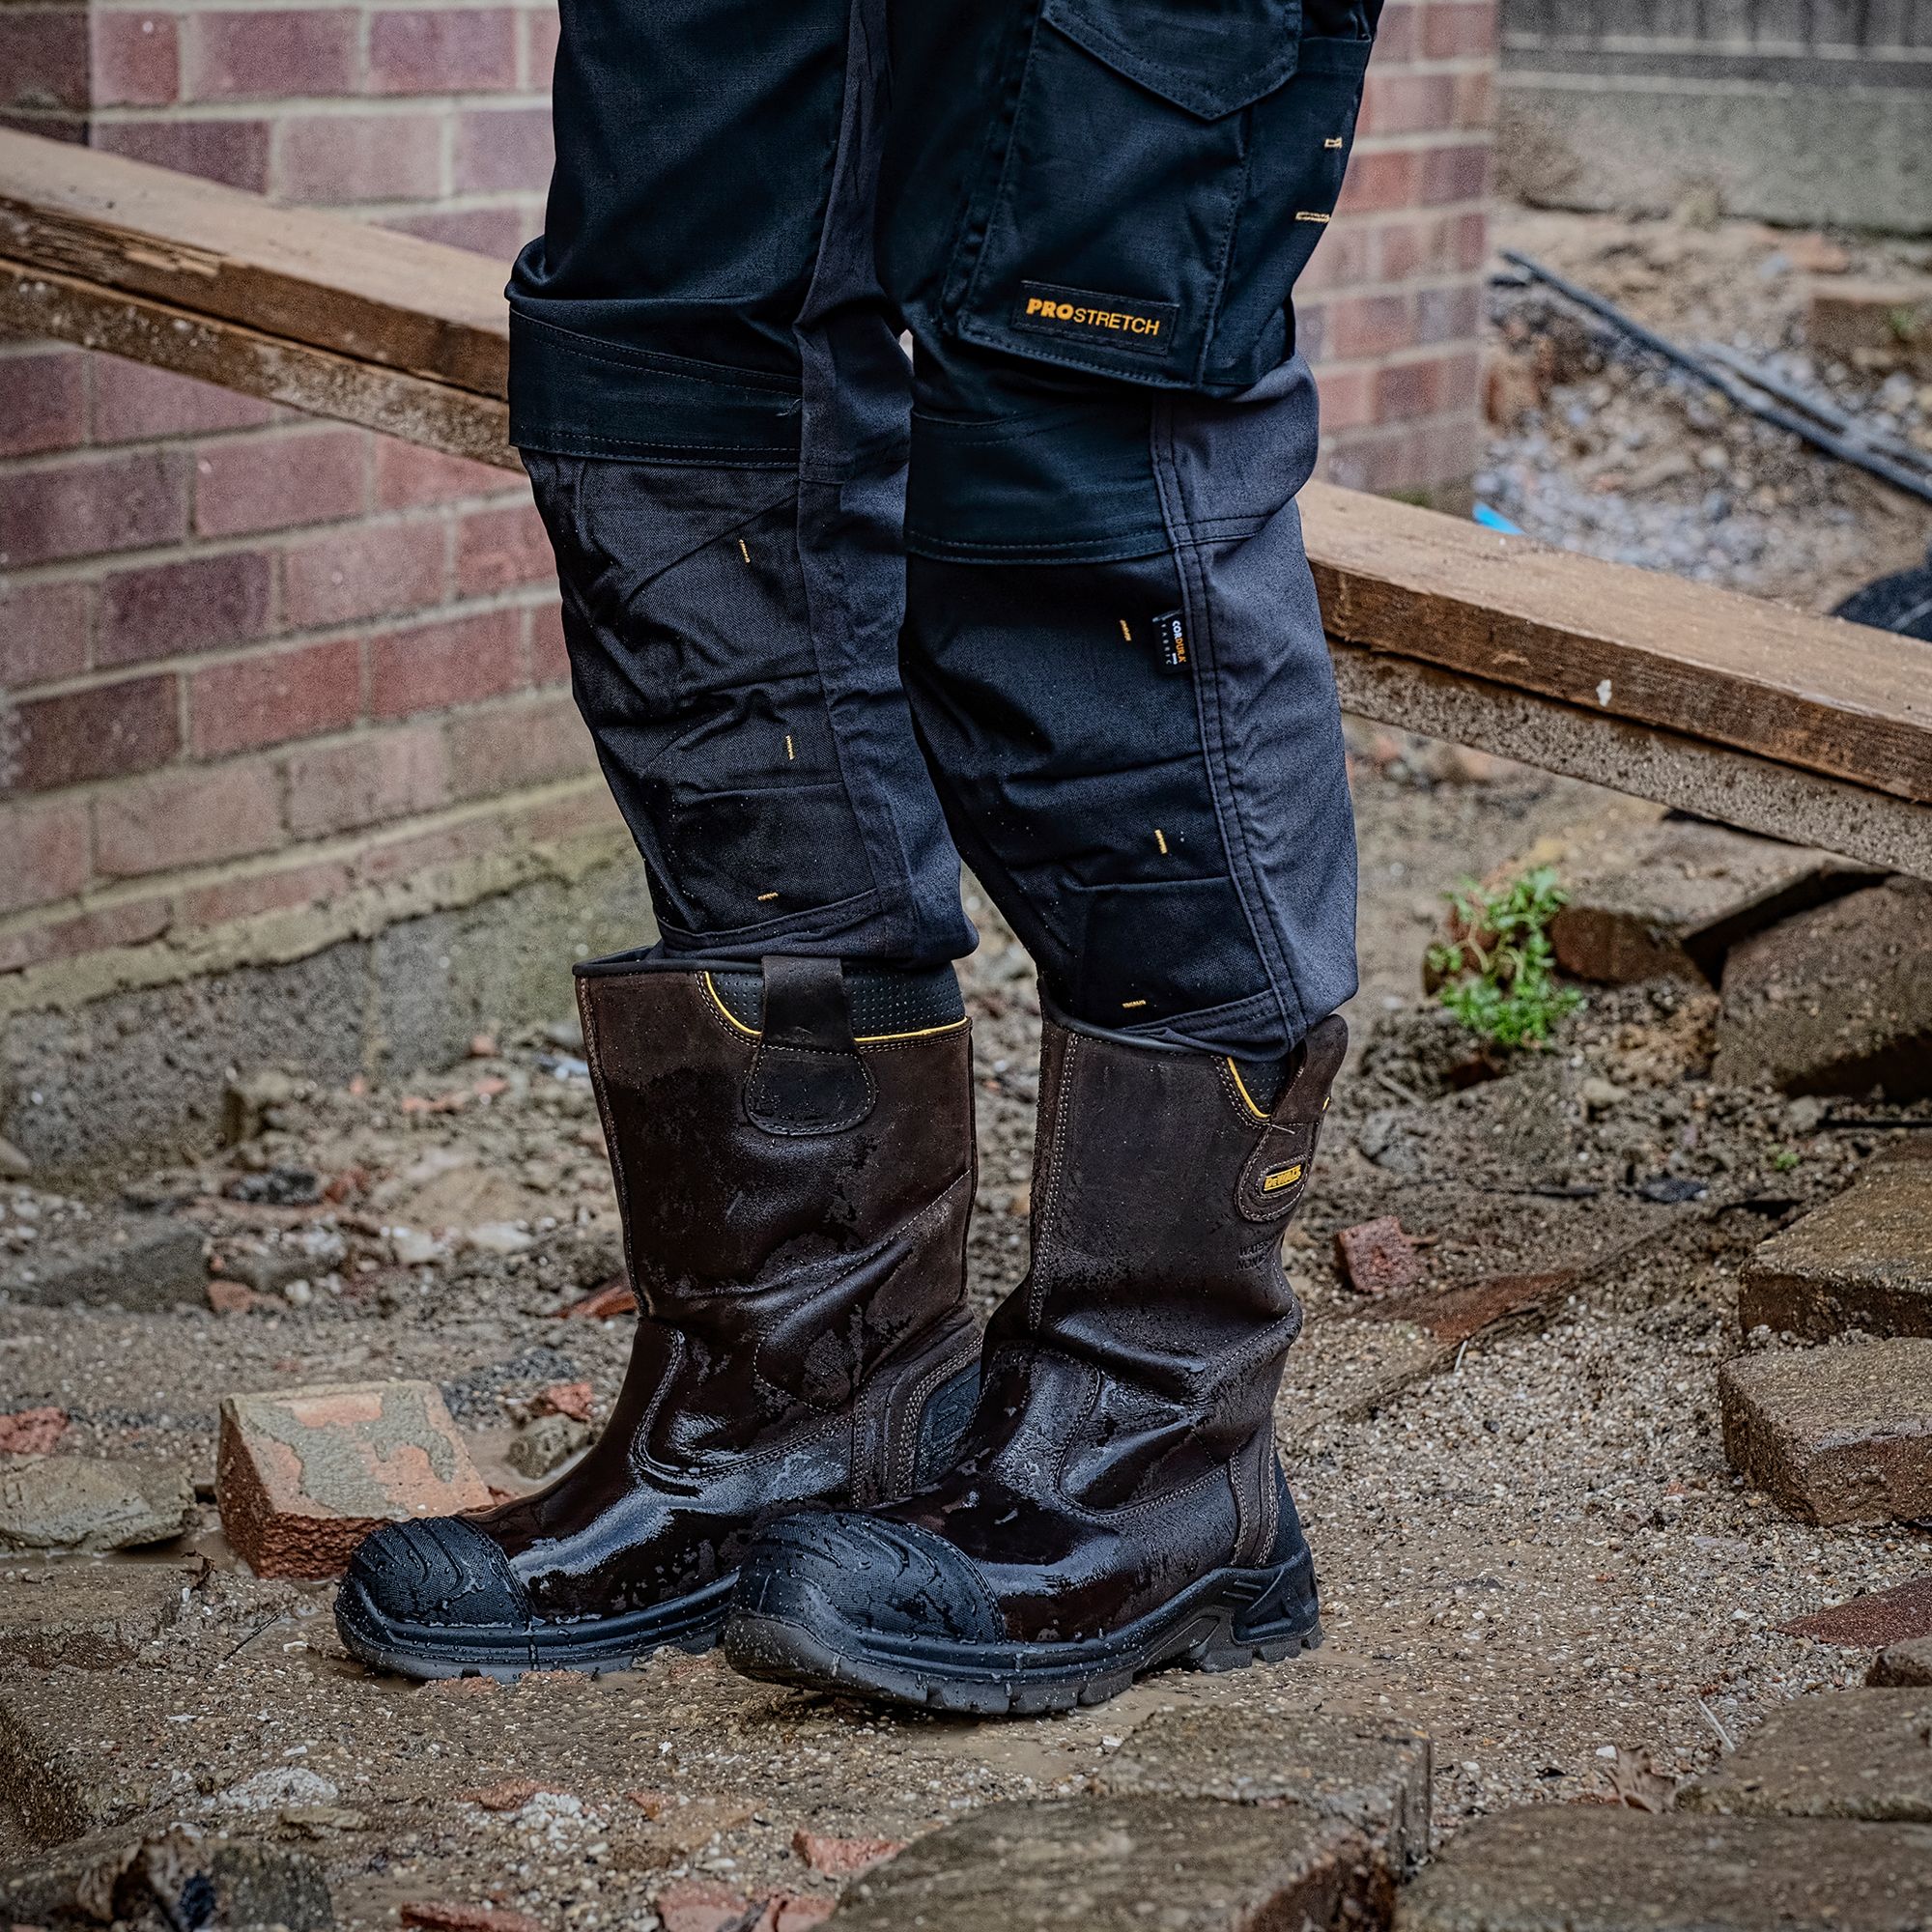 DeWalt Millington Brown Safety rigger boots, Size 7